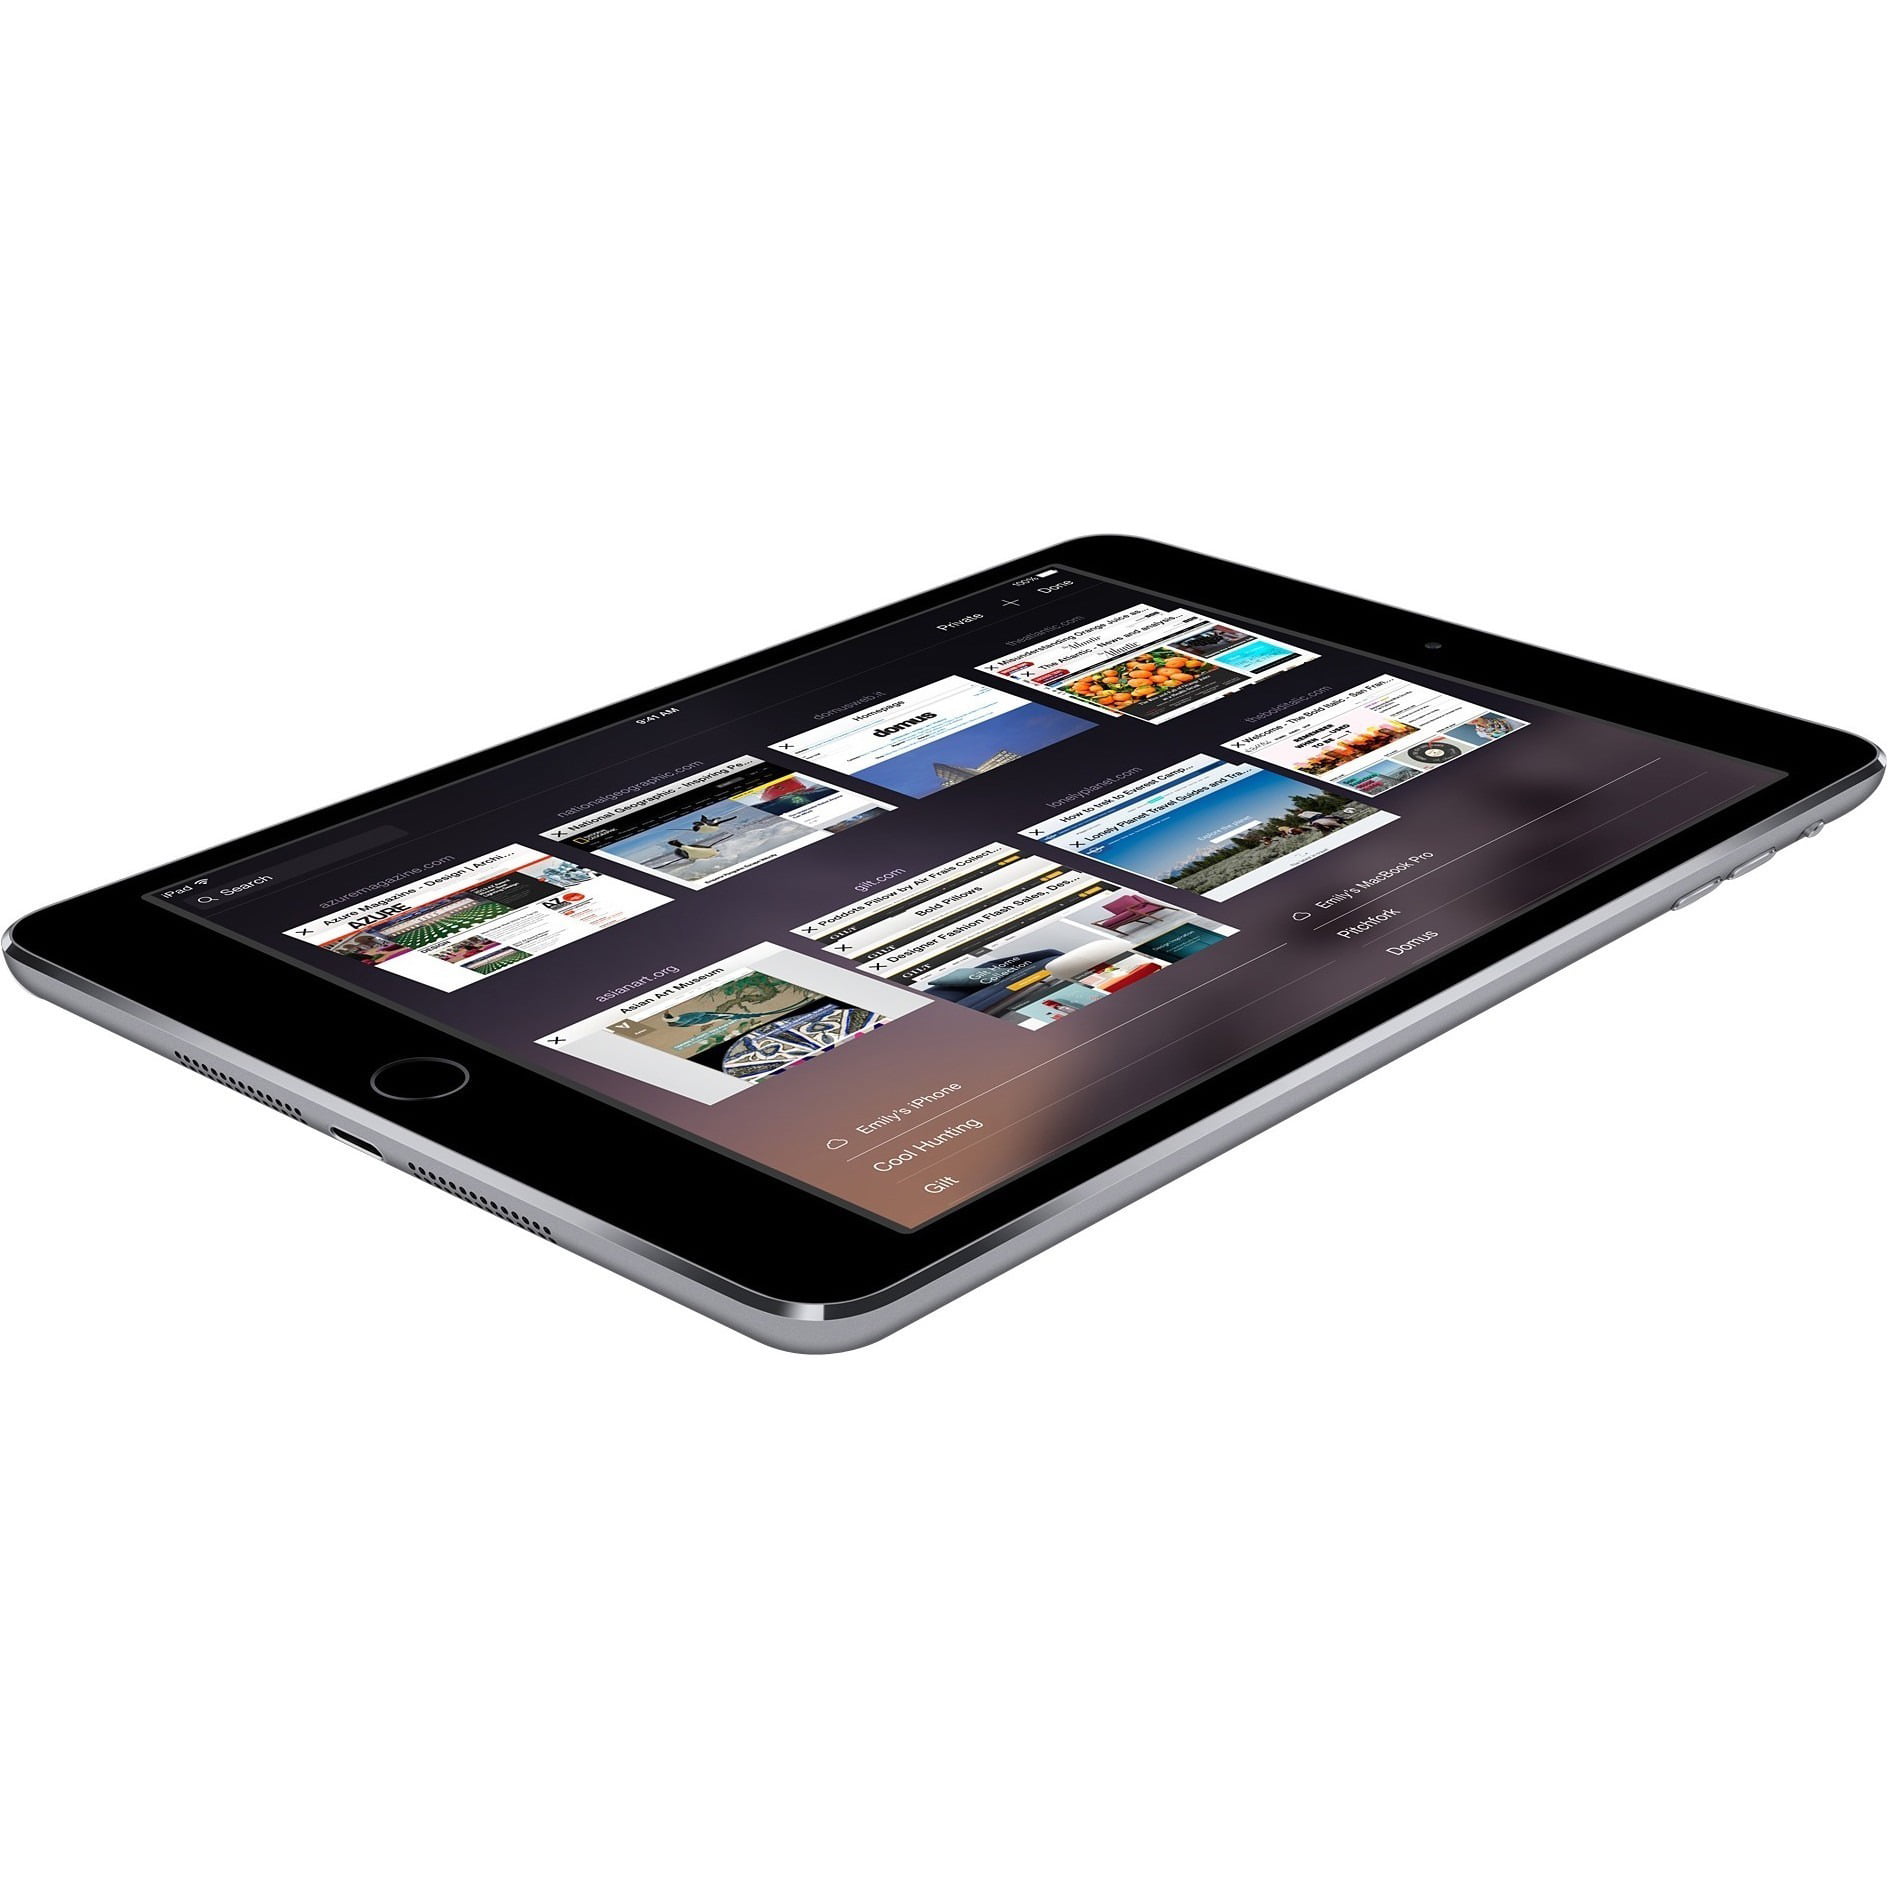 iPad Air 2 Wi-Fi 128GB - Space Gray - Walmart.com - Walmart.com